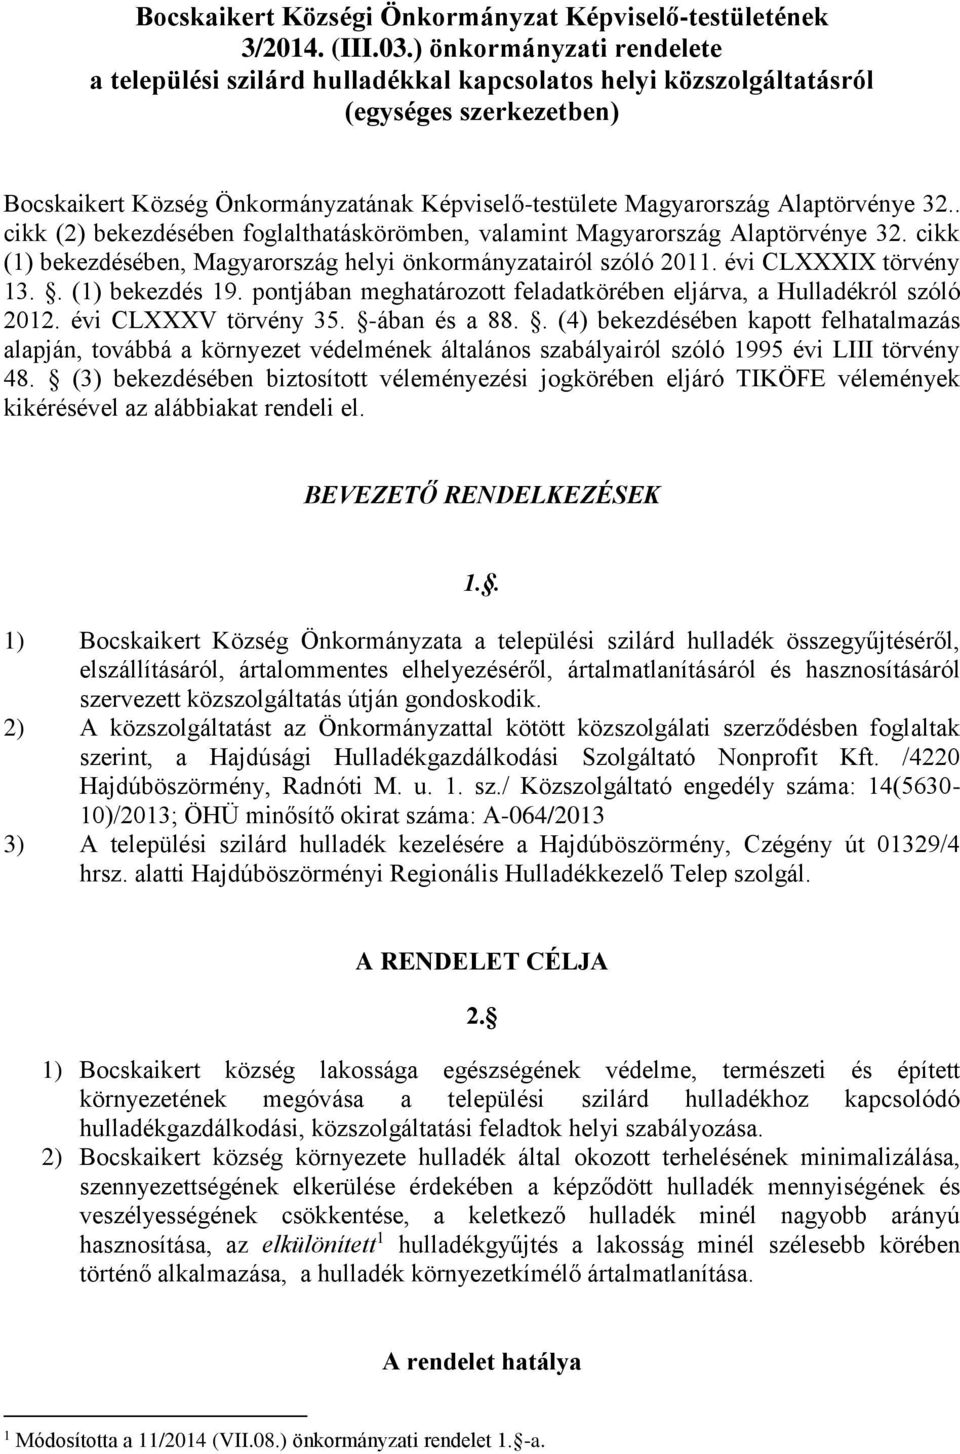 Alaptörvénye 32.. cikk (2) bekezdésében foglalthatáskörömben, valamint Magyarország Alaptörvénye 32. cikk (1) bekezdésében, Magyarország helyi önkormányzatairól szóló 2011. évi CLXXXIX törvény 13.